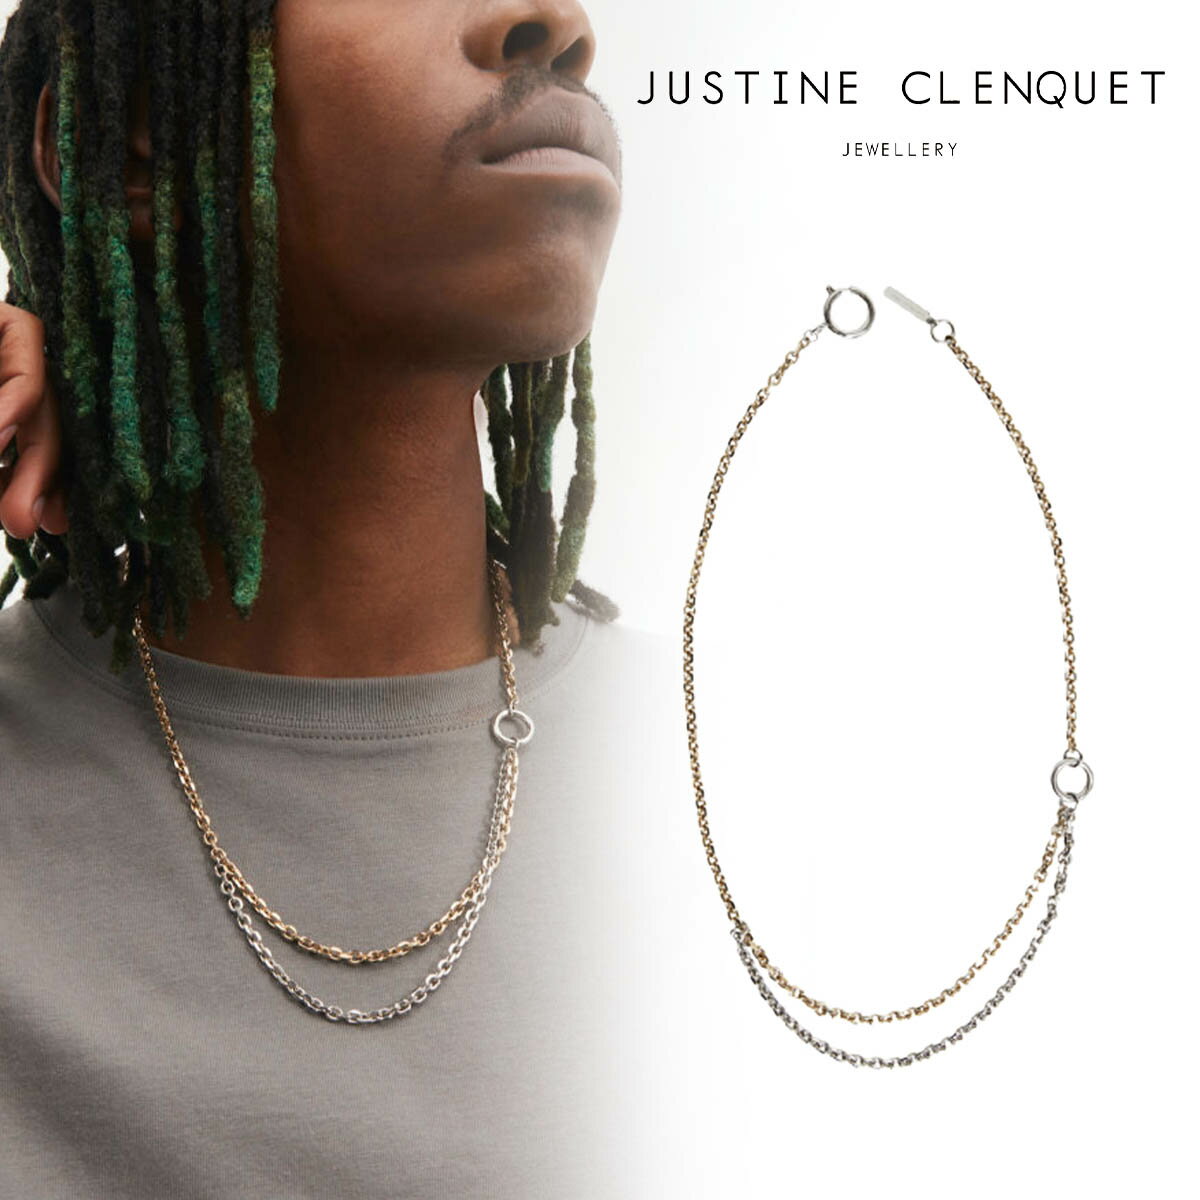 ジュスティーヌクランケ Justine Clenquet カート ネックレス Kurt necklace チョーカー パラジウム レディース メンズ アクセサリー